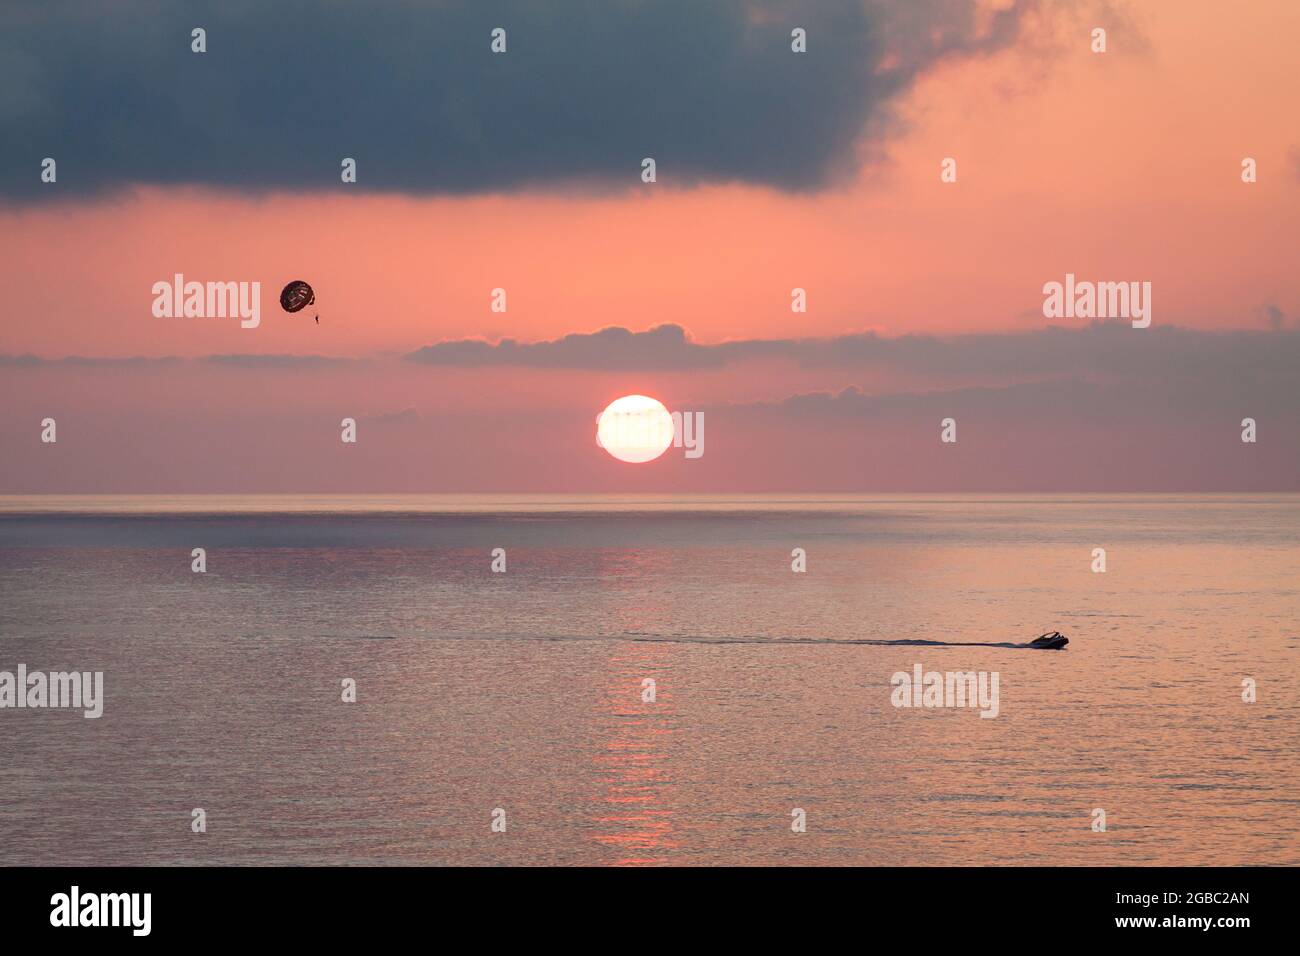 Parasailing dietro una barca al tramonto sul mare con il sole scende. Silhouette di una persona con paracadute contro il cielo di sera con le nuvole. Bella stagione. Foto Stock